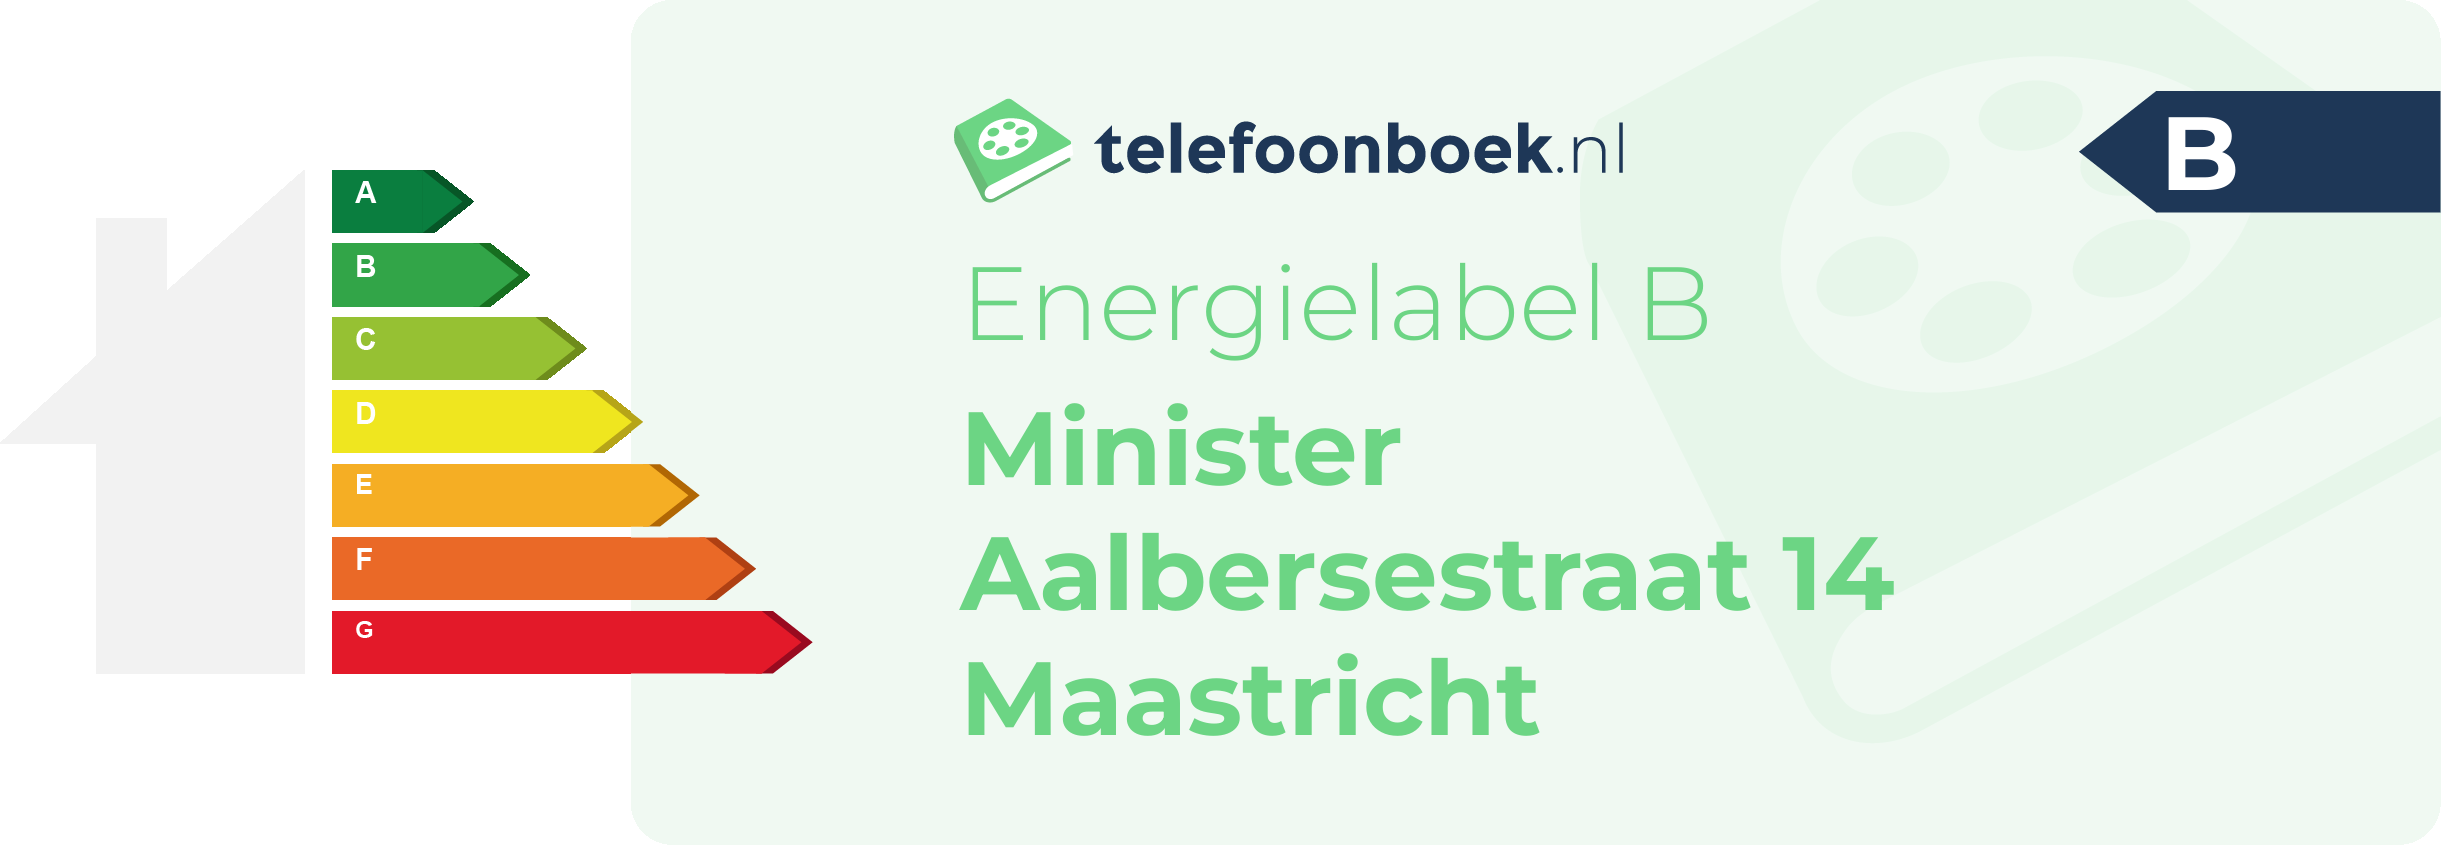 Energielabel Minister Aalbersestraat 14 Maastricht